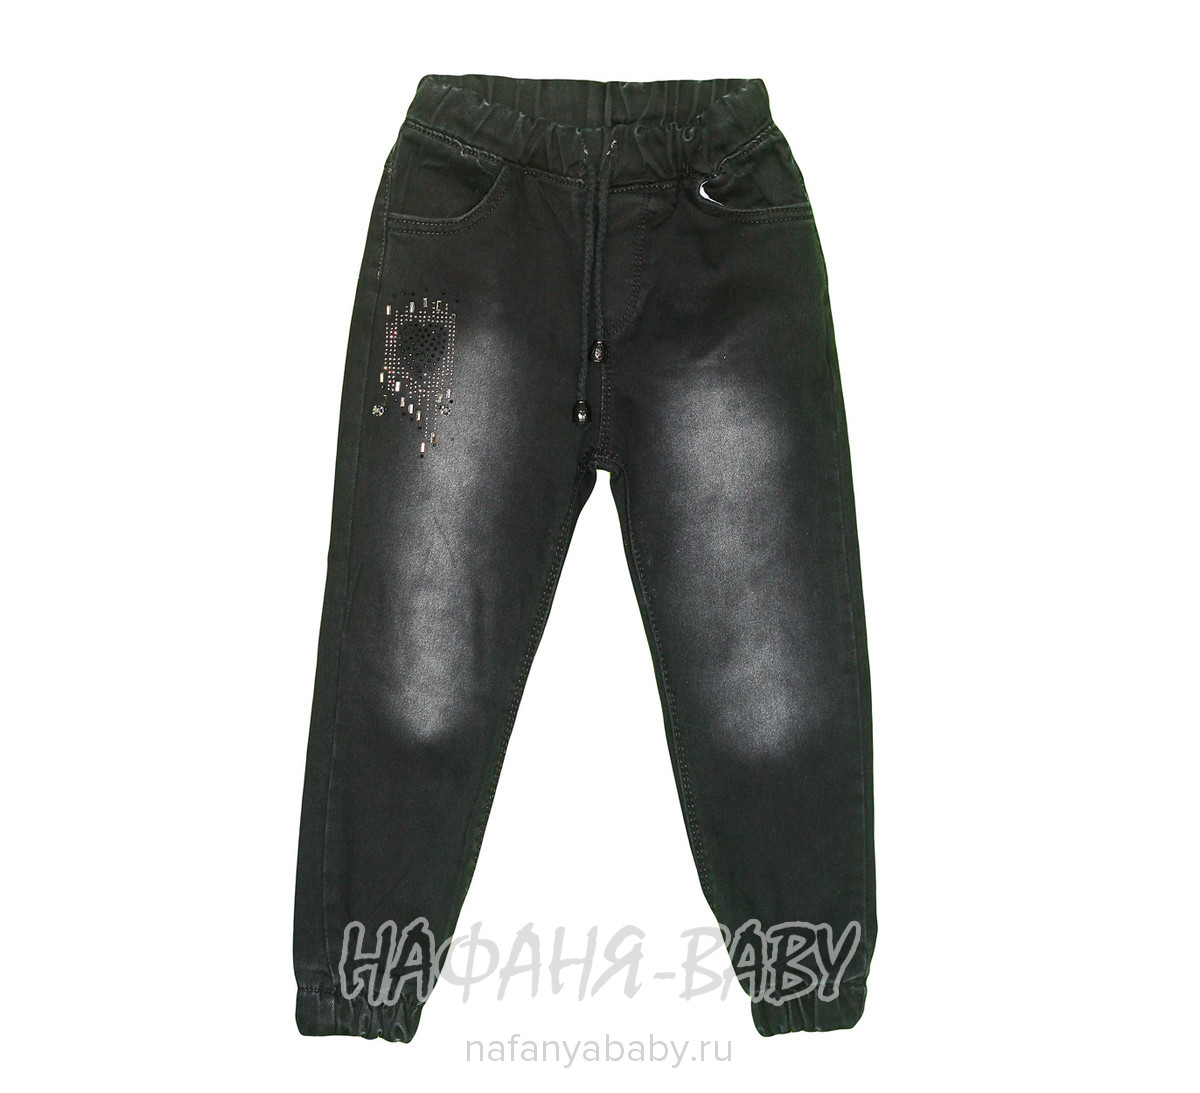 Детские джинсы TATI Jeans арт: 3787, 1-4 года, 5-9 лет, оптом Турция